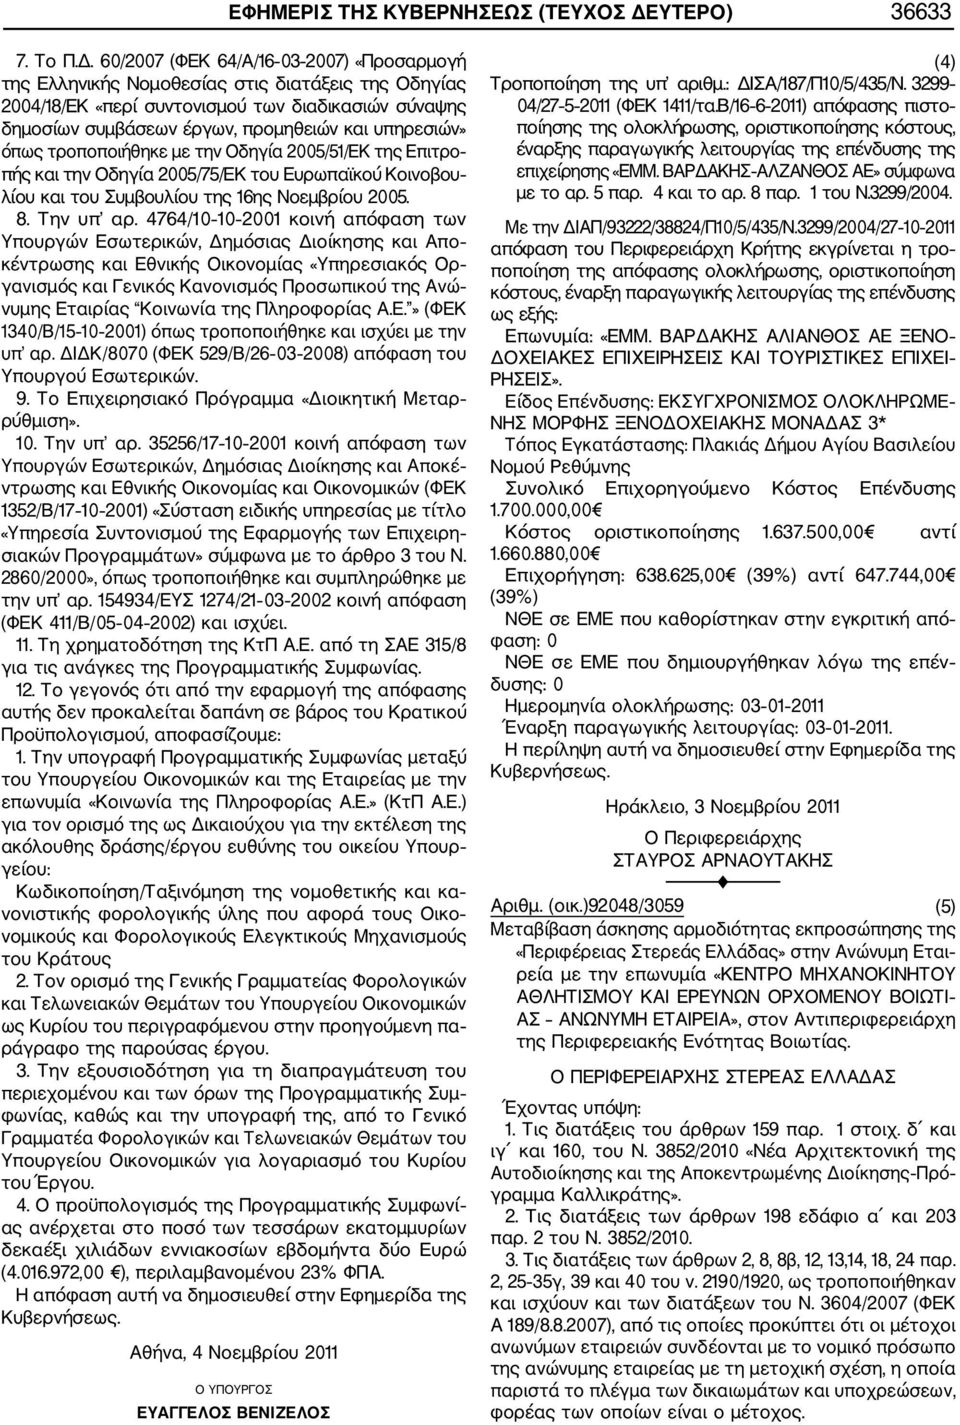 60/2007 (ΦΕΚ 64/Α/16 03 2007) «Προσαρμογή της Ελληνικής Νομοθεσίας στις διατάξεις της Οδηγίας 2004/18/ΕΚ «περί συντονισμού των διαδικασιών σύναψης δημοσίων συμβάσεων έργων, προμηθειών και υπηρεσιών»